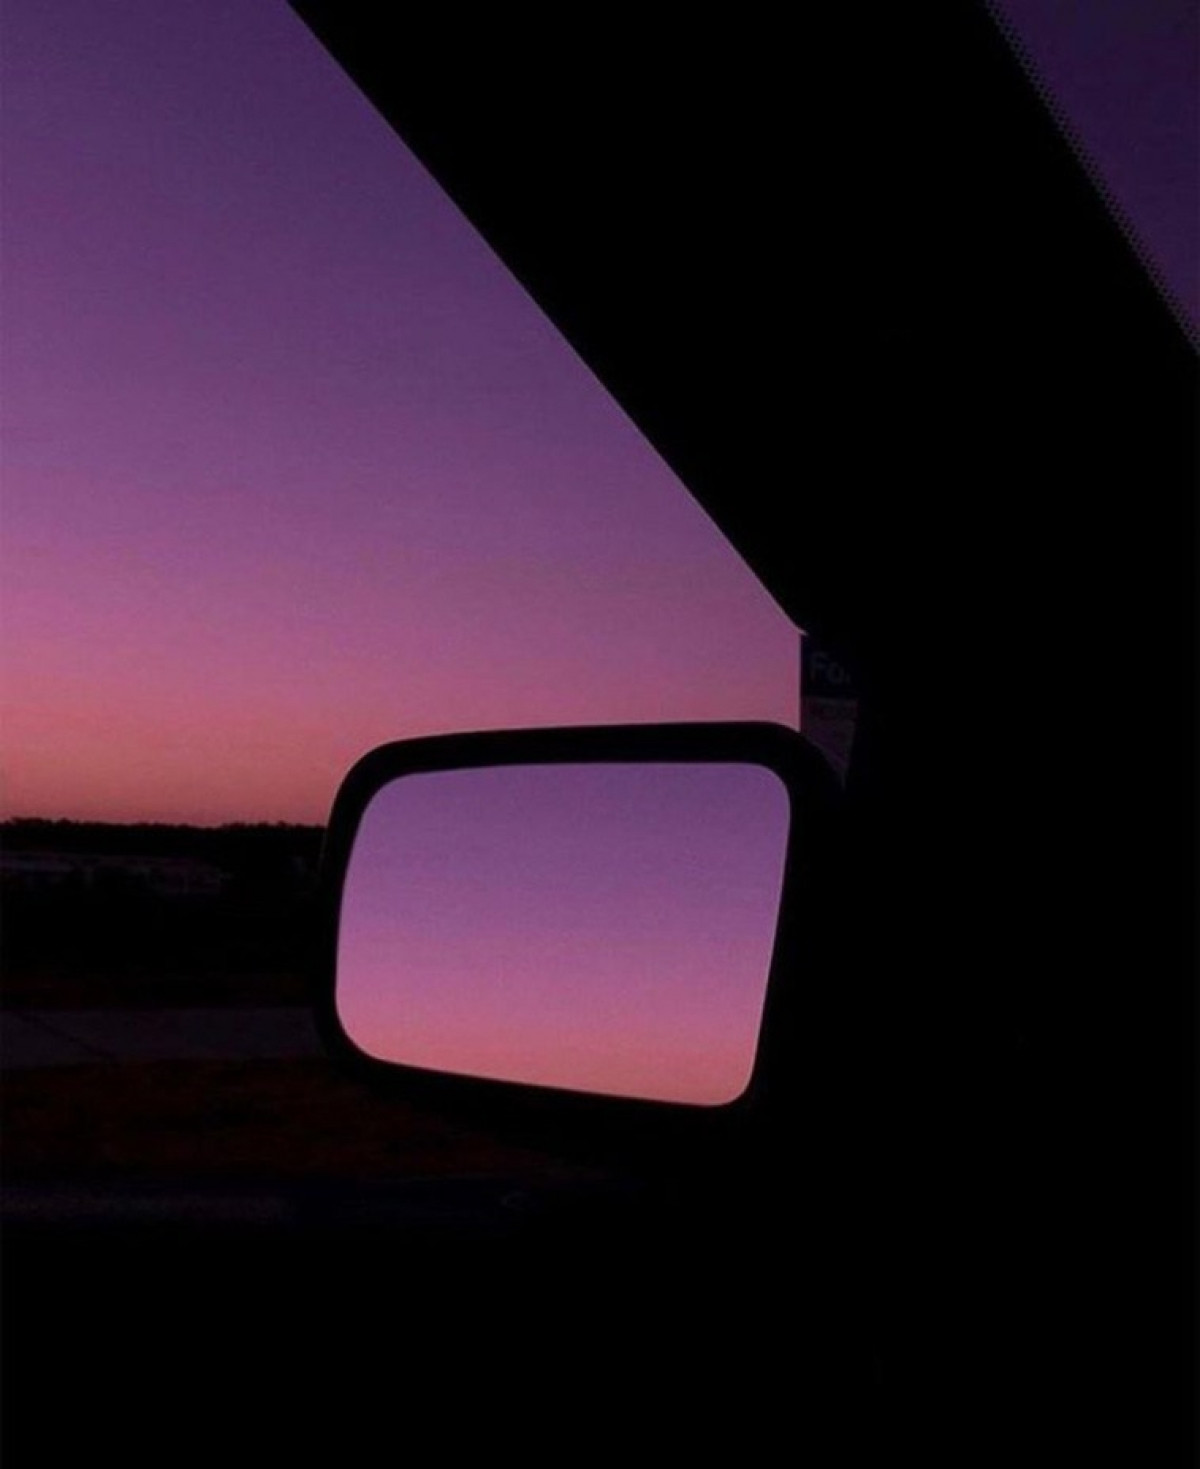 Bầu trời như hòa cùng một sắc giữa thế giới thực và hình ảnh phản chiếu trên gương ô tô.